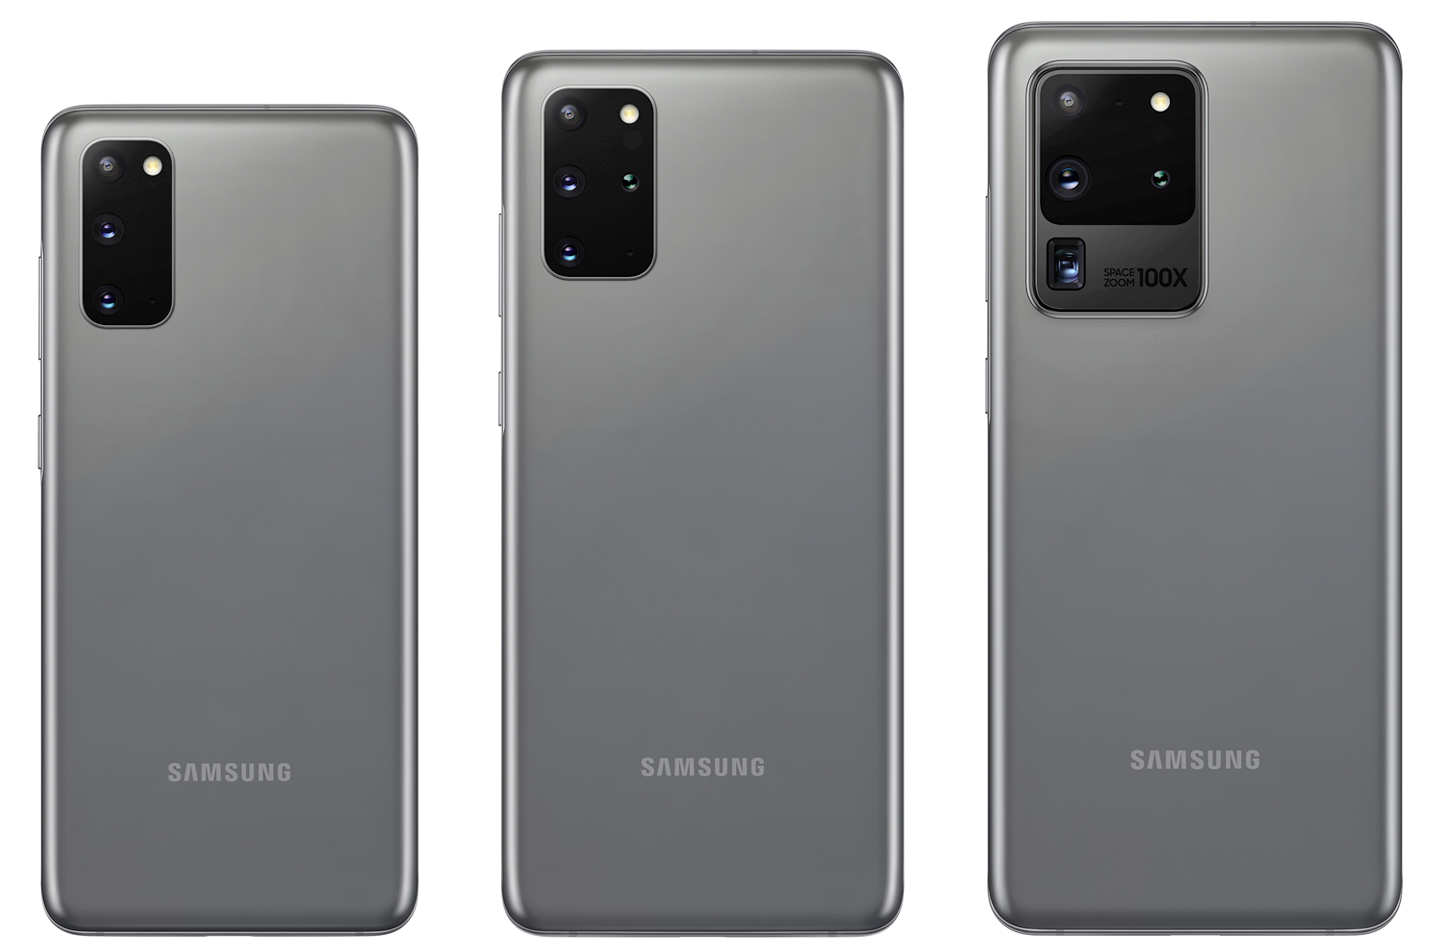 Samsung випадково показала флагмани Galaxy S20 на офіційному сайті